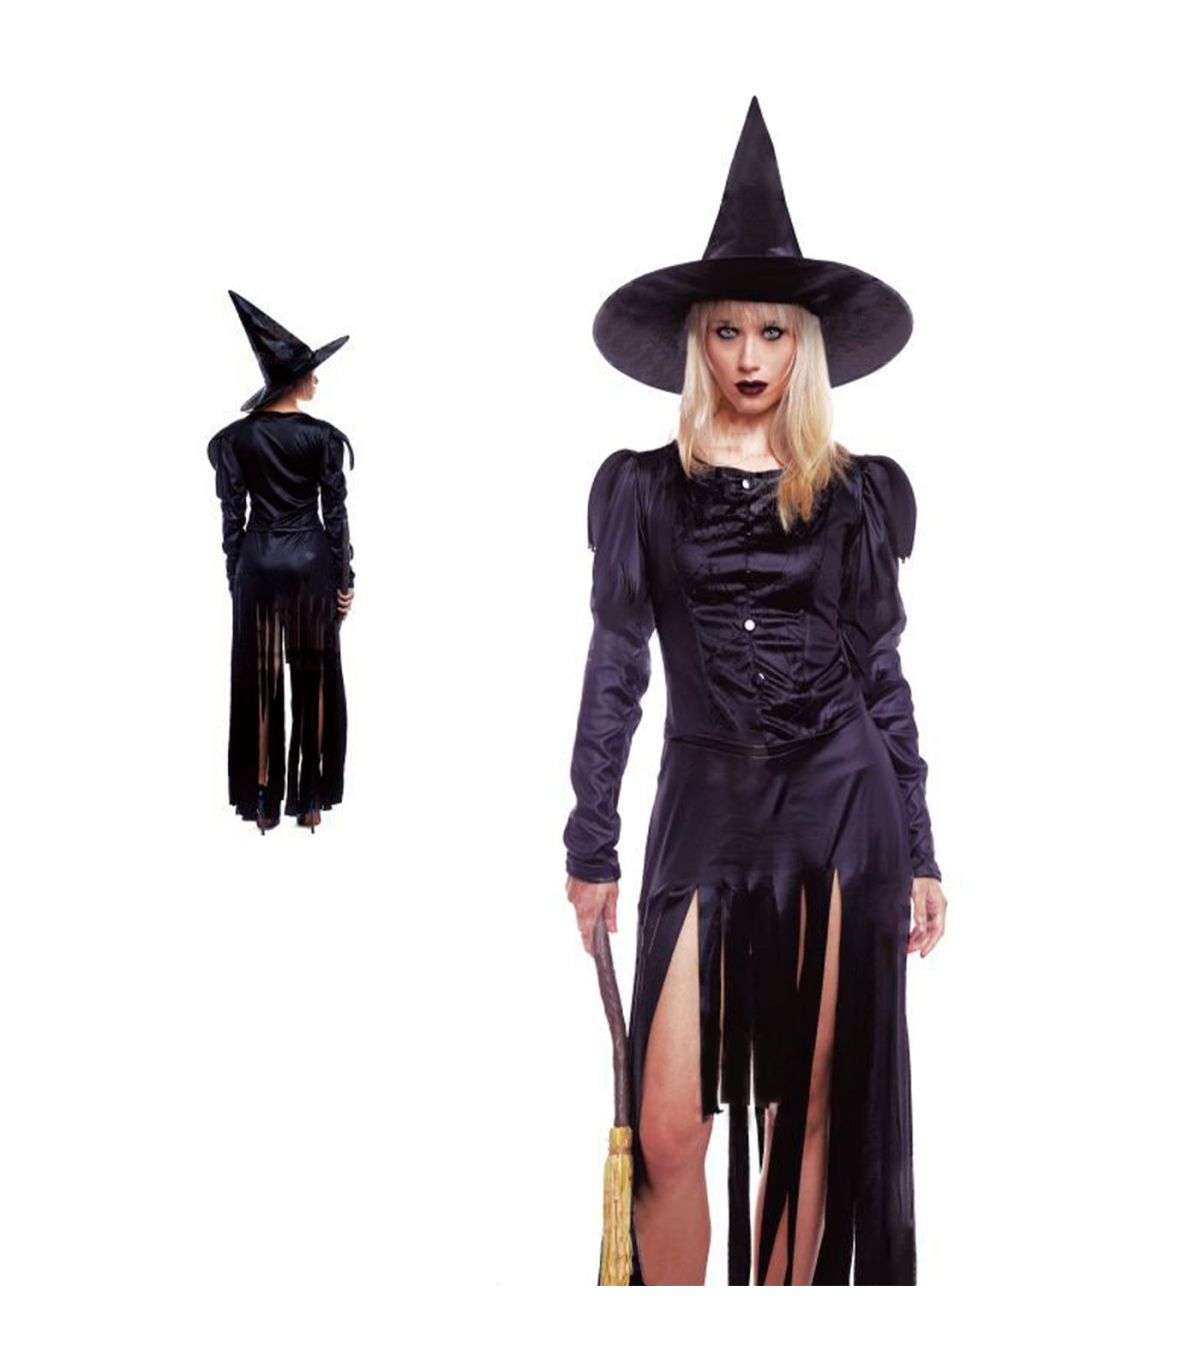 Tradineur - Disfraz de bruja negra para mujer, poliéster, incluye vestido y  sombrero, carnaval, Halloween, cosplay (Adulto, Tall